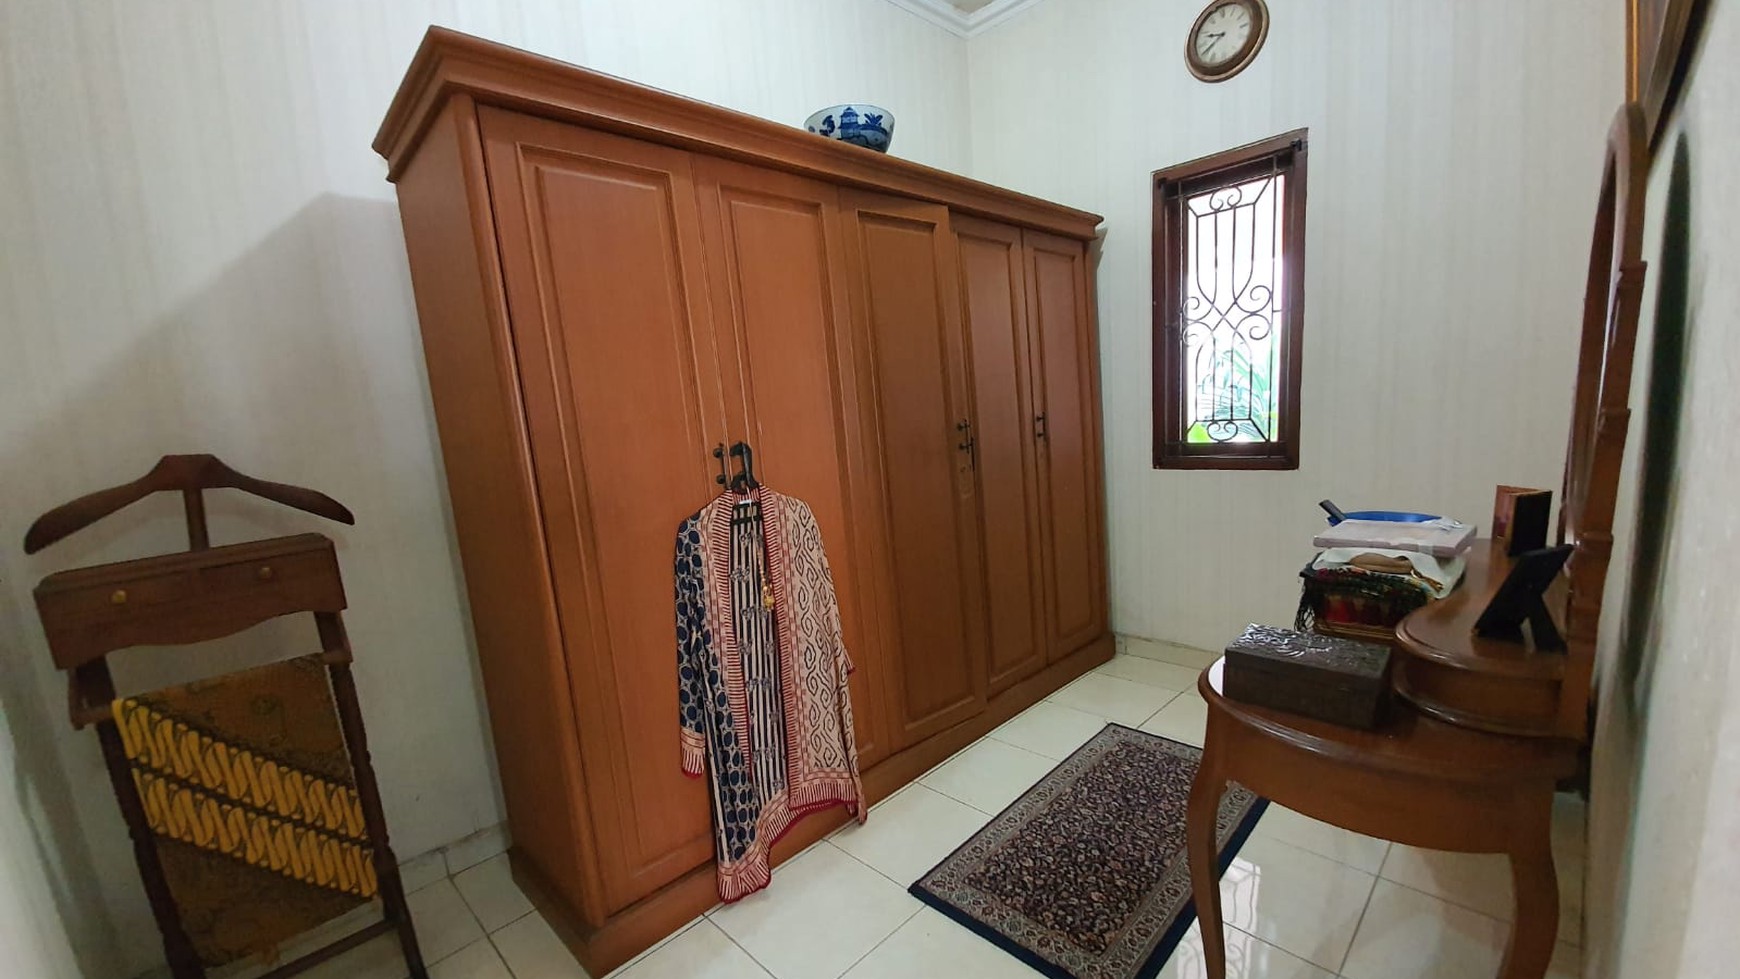 Rumah Strategis Dengan Halaman Belakang Luas dan Strategis @Jl Nusa Jaya, Pondok Ranji